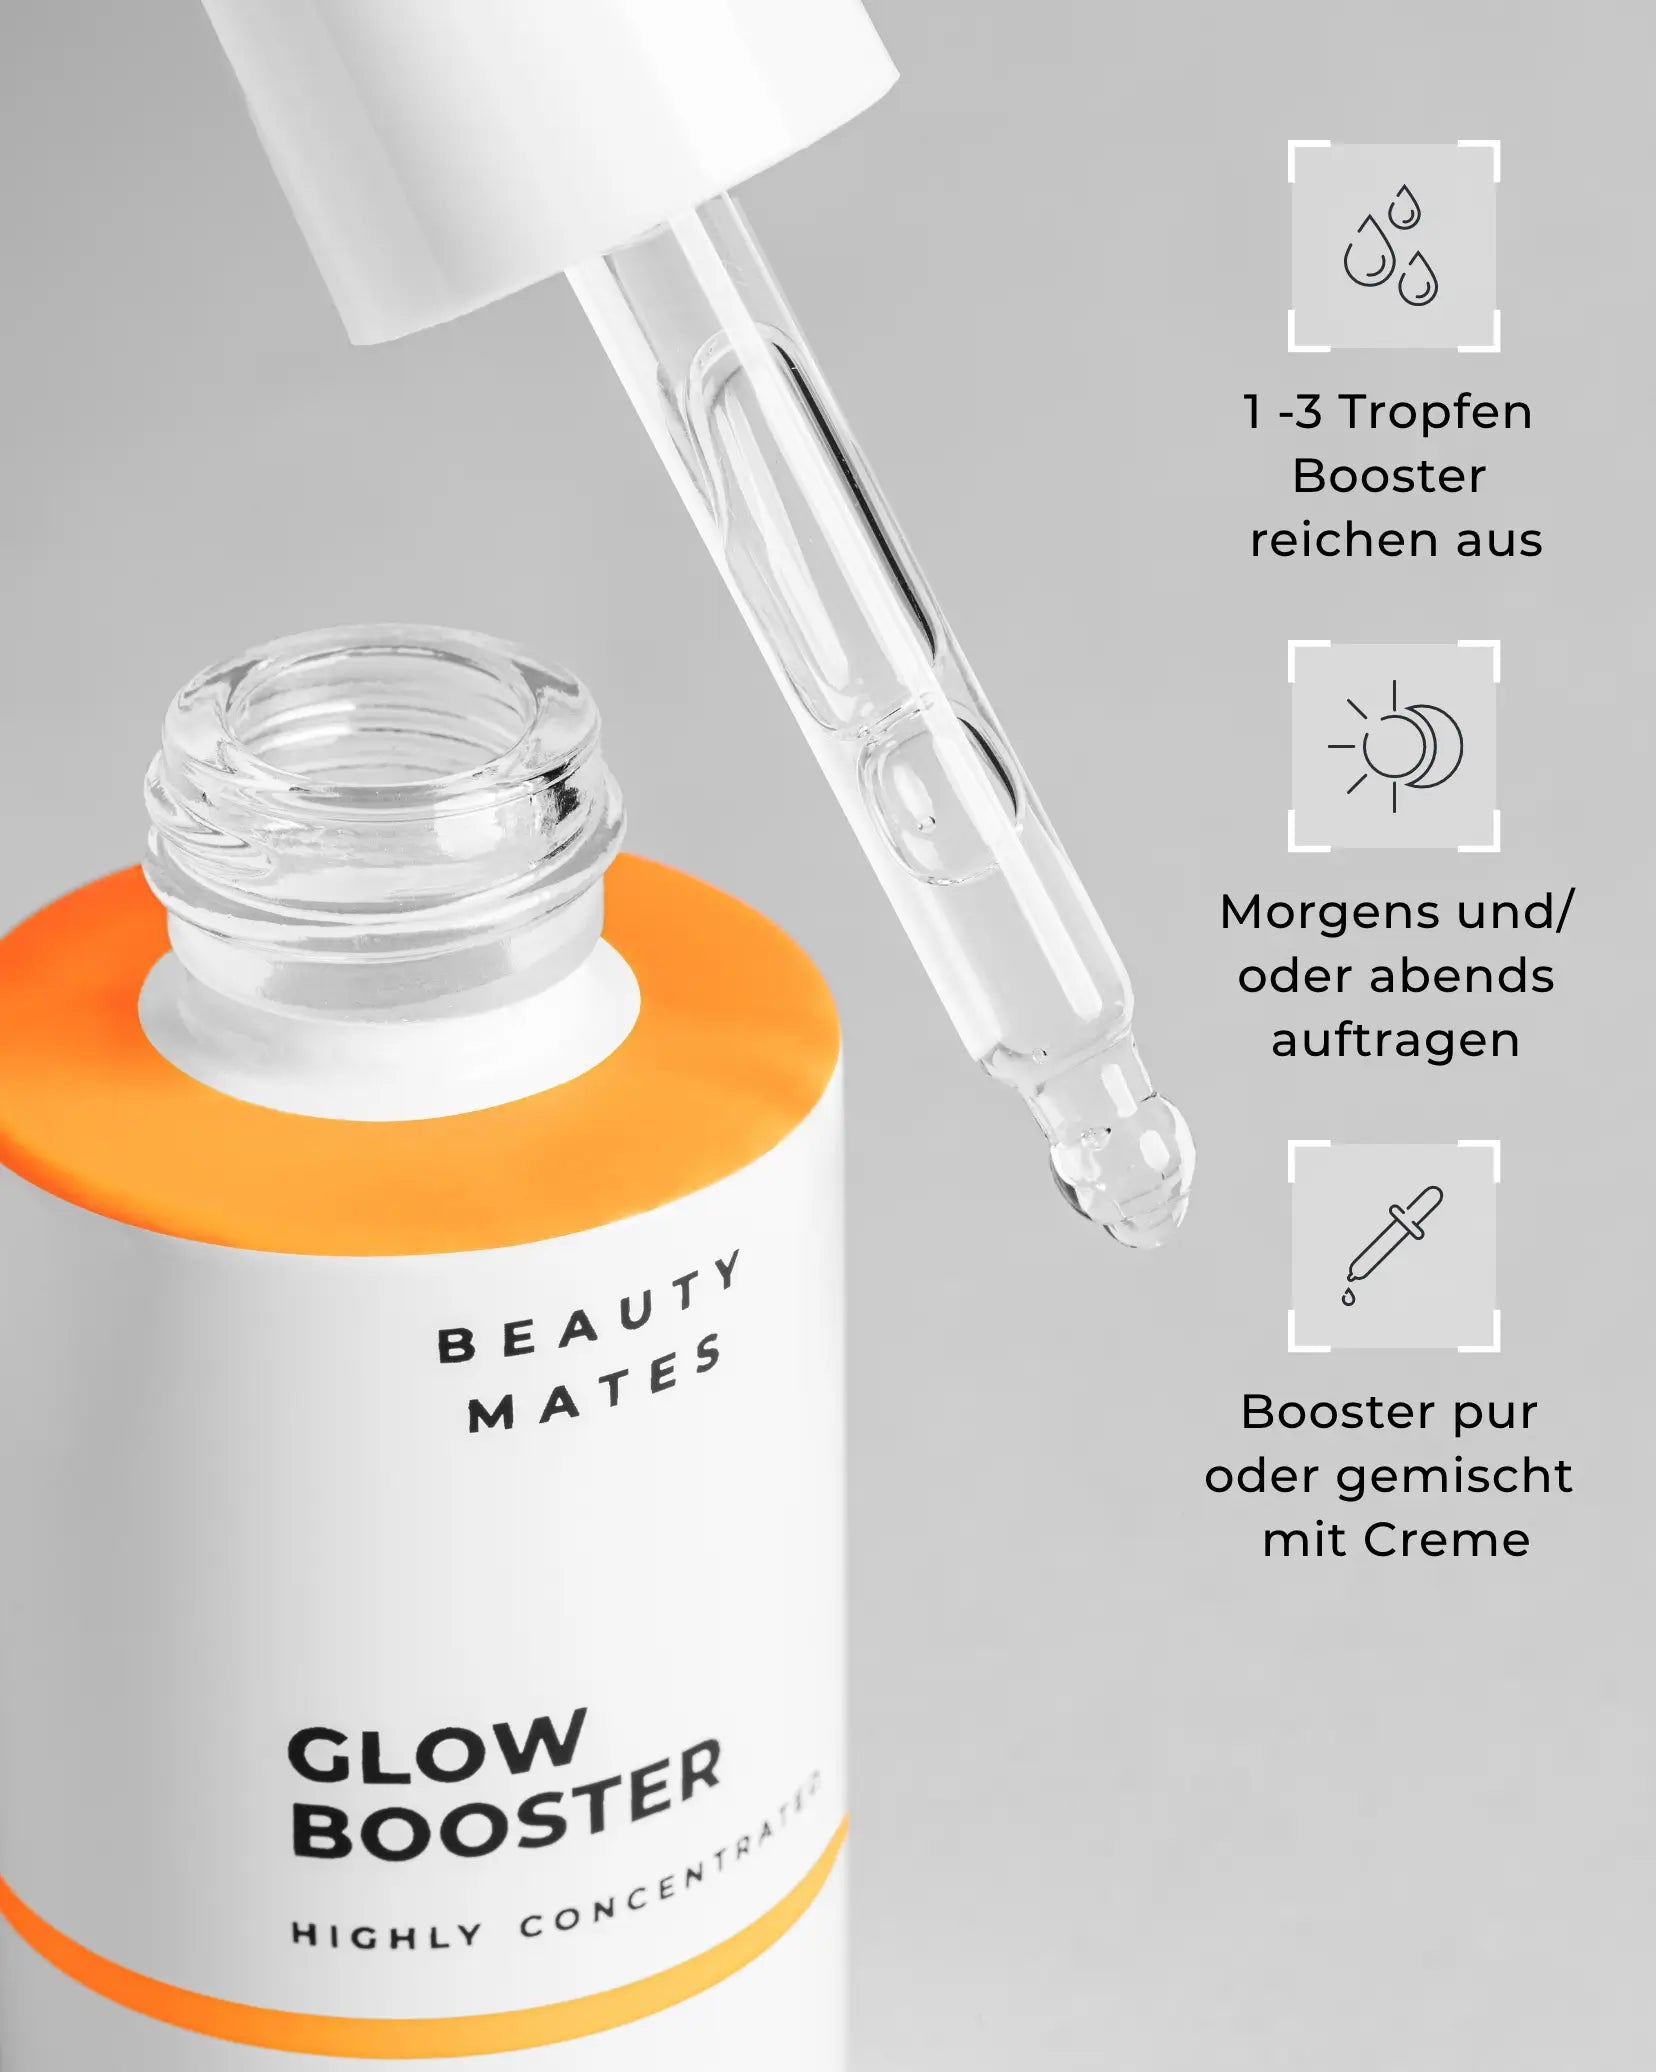 Beauty Mates Glow Booster - Anwendung des hochkonzentrierten Serums mit Pipette